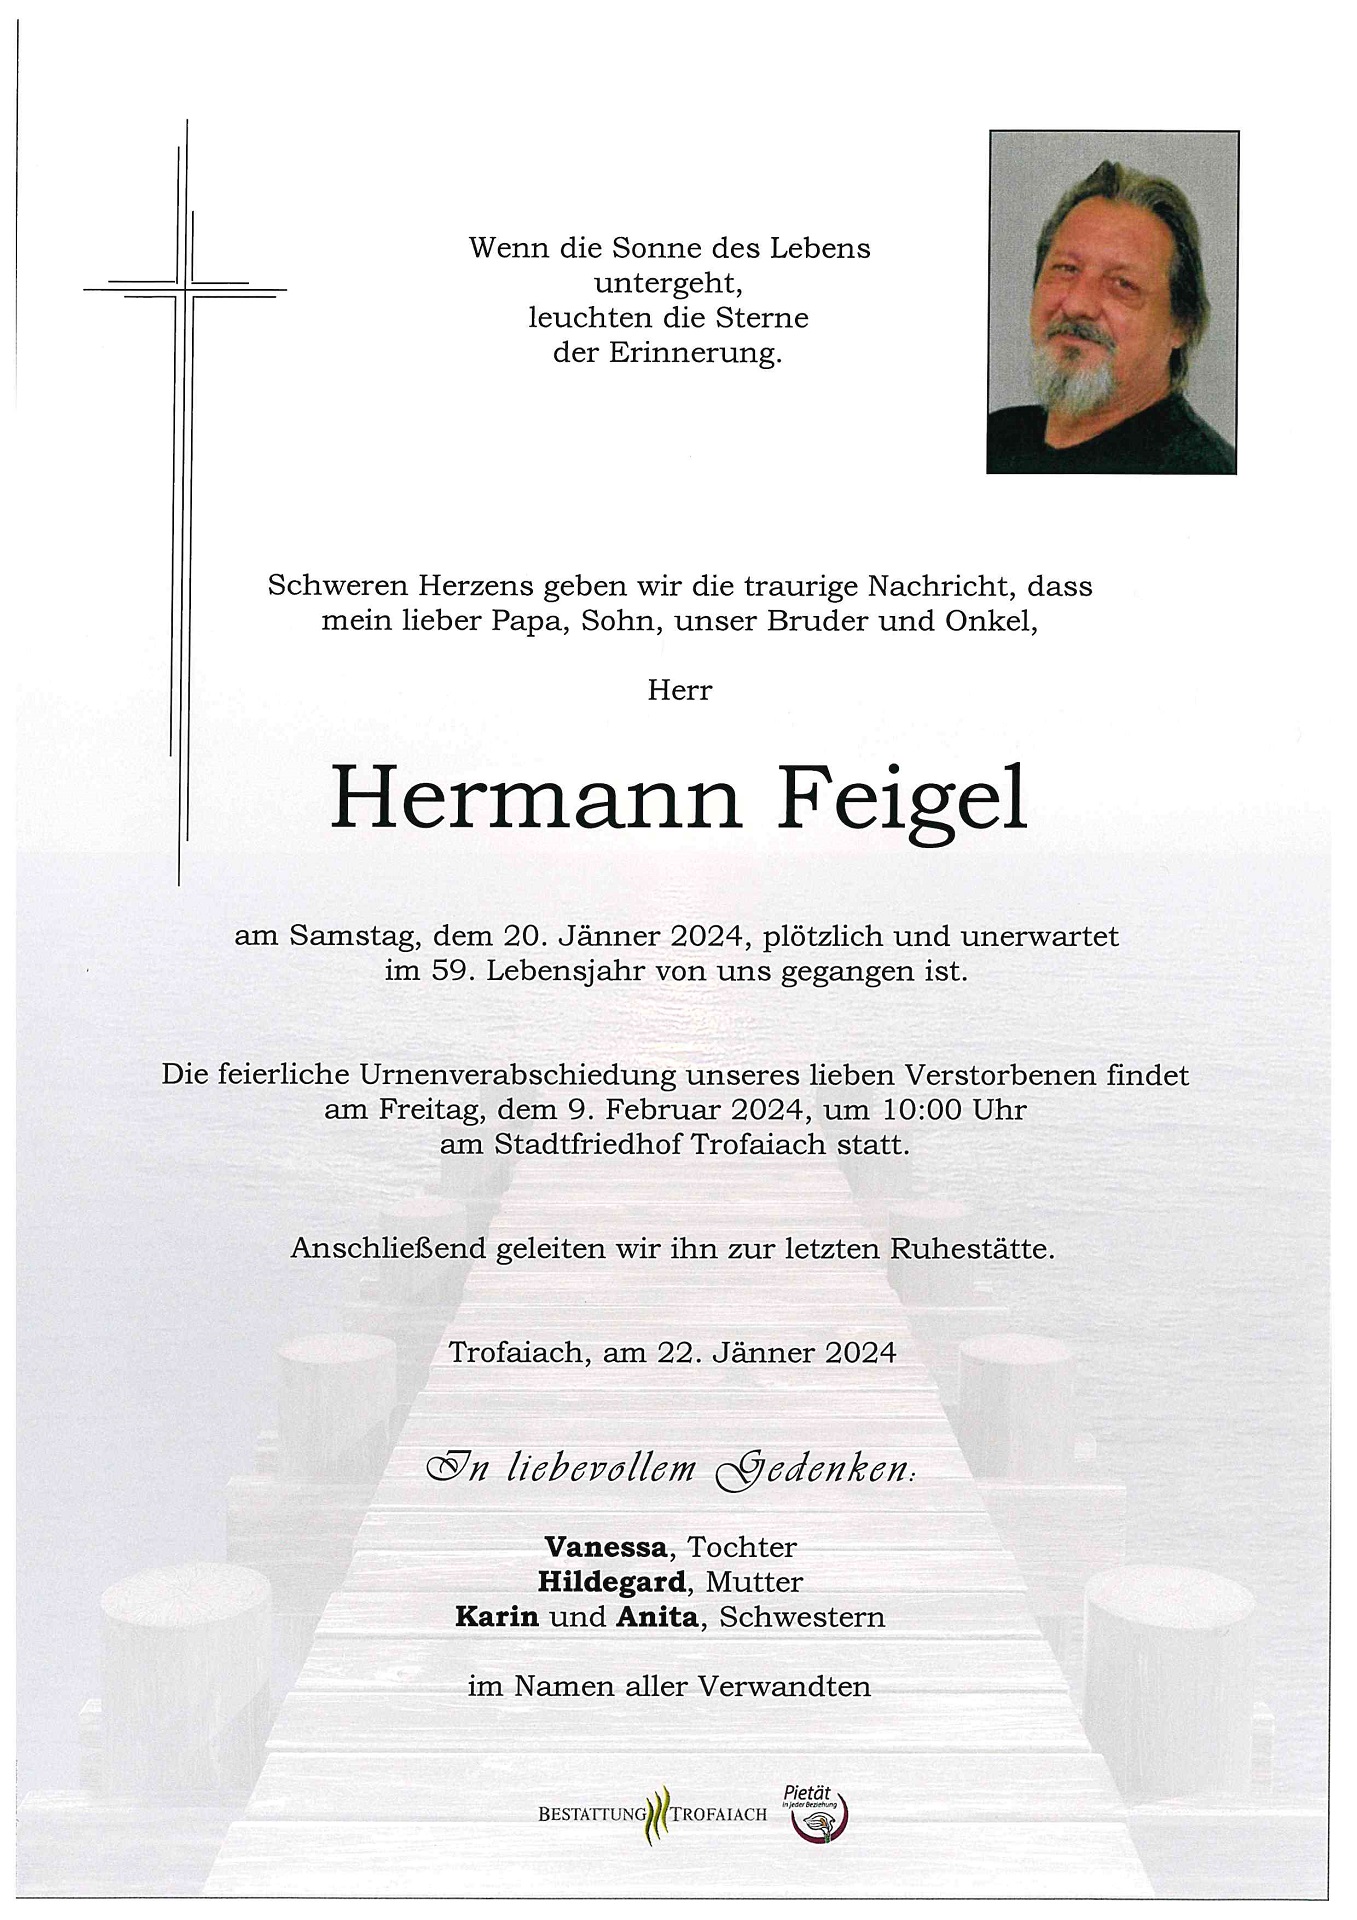 Feigel Hermann